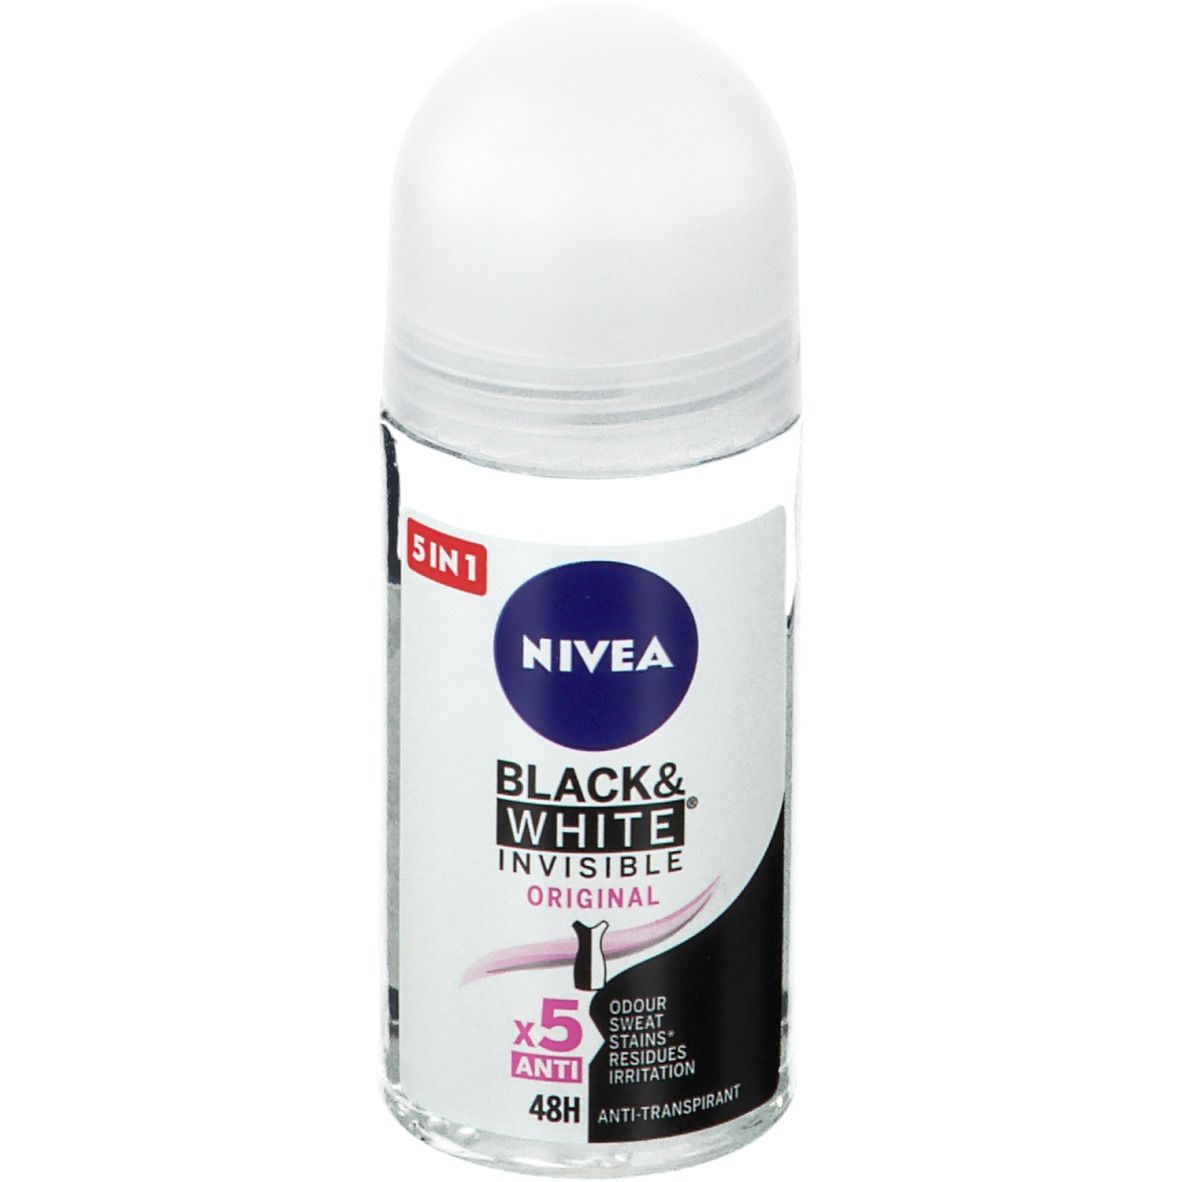 Nivea Black & White Invisible Original Déodorant Roll-On 48h